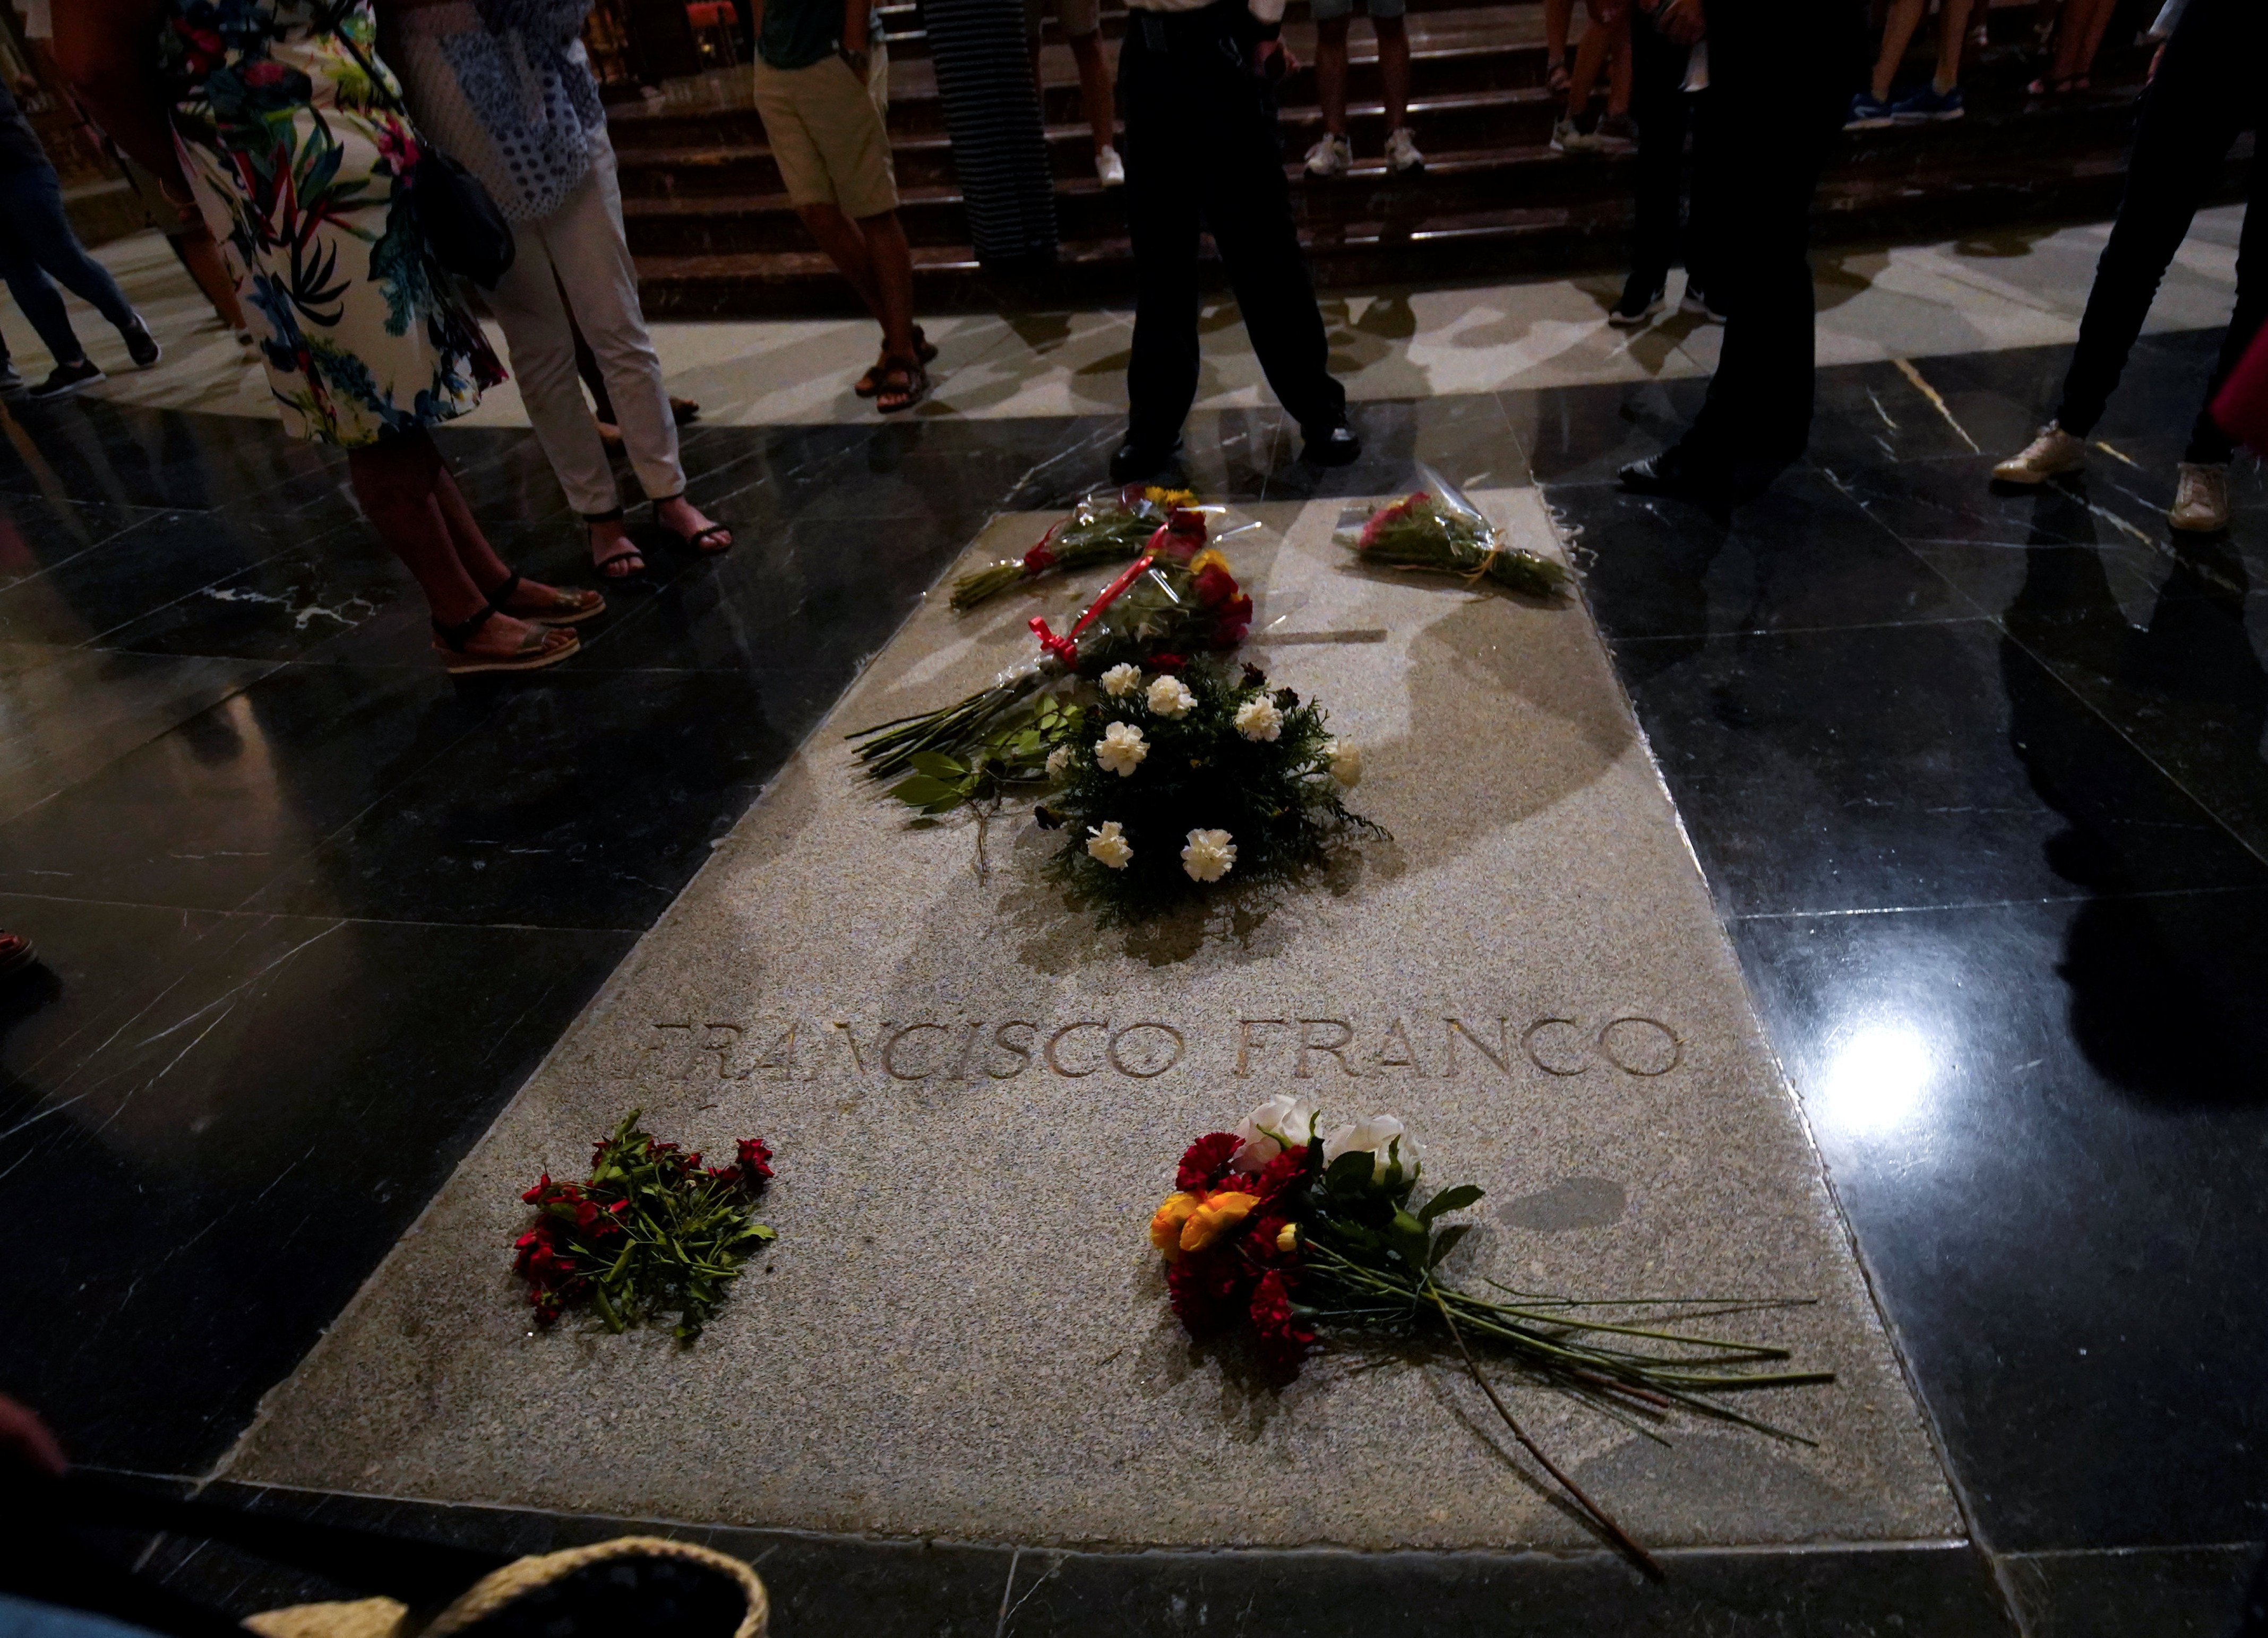 El Supremo da vía libre para exhumar a Franco y recuerda al prior que debe acatar